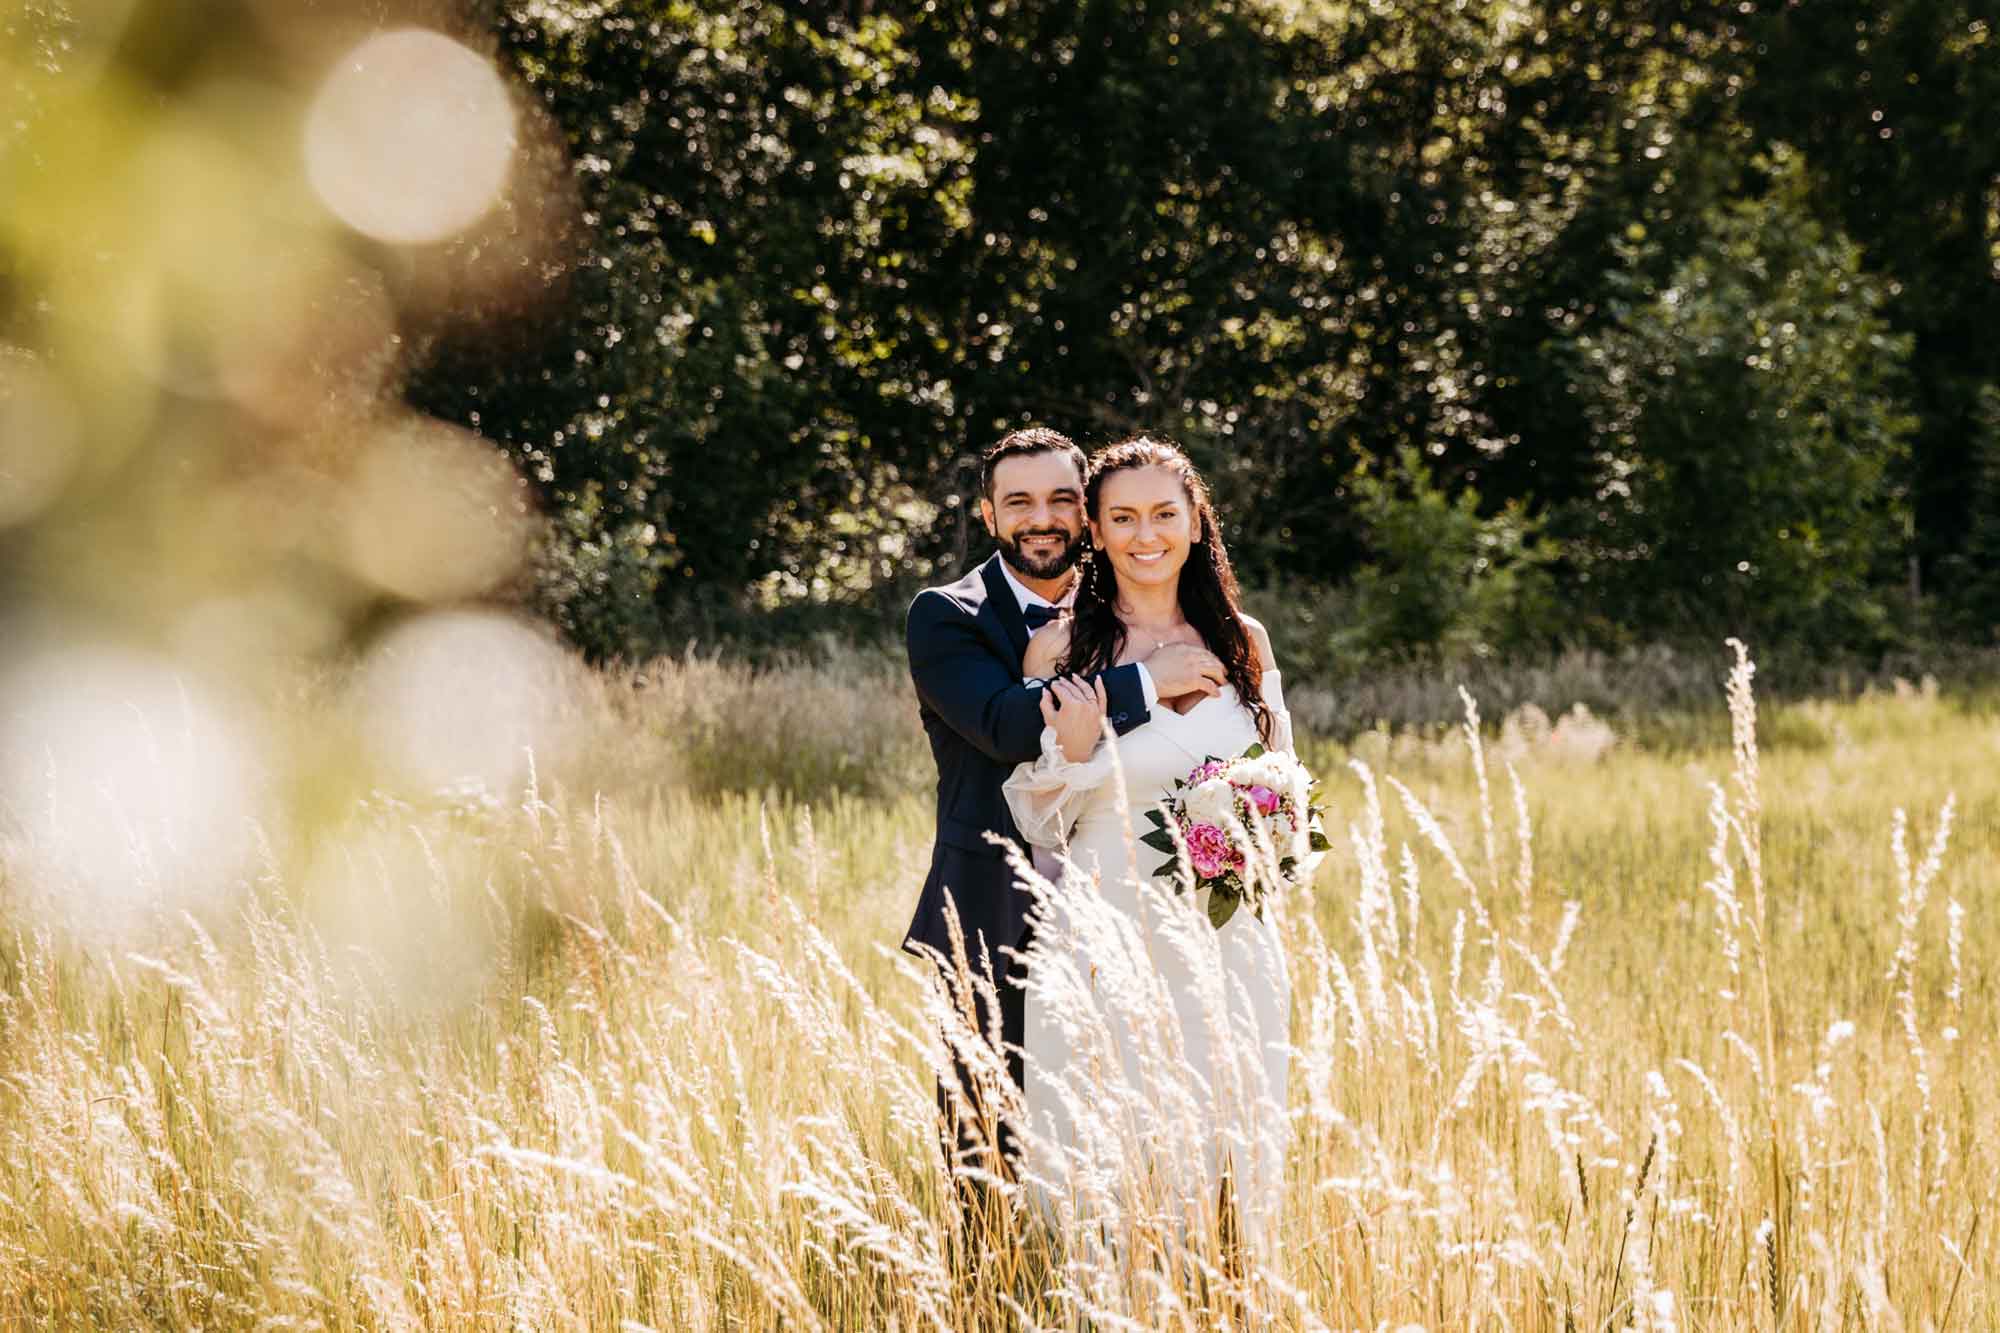 Das Brautpaar steht eng hintereinander mit Blick zum Fotografen. Links im Bild ist im Vordergrund ein Busch und im Hintergrund ist Wald und Feld zu sehen.